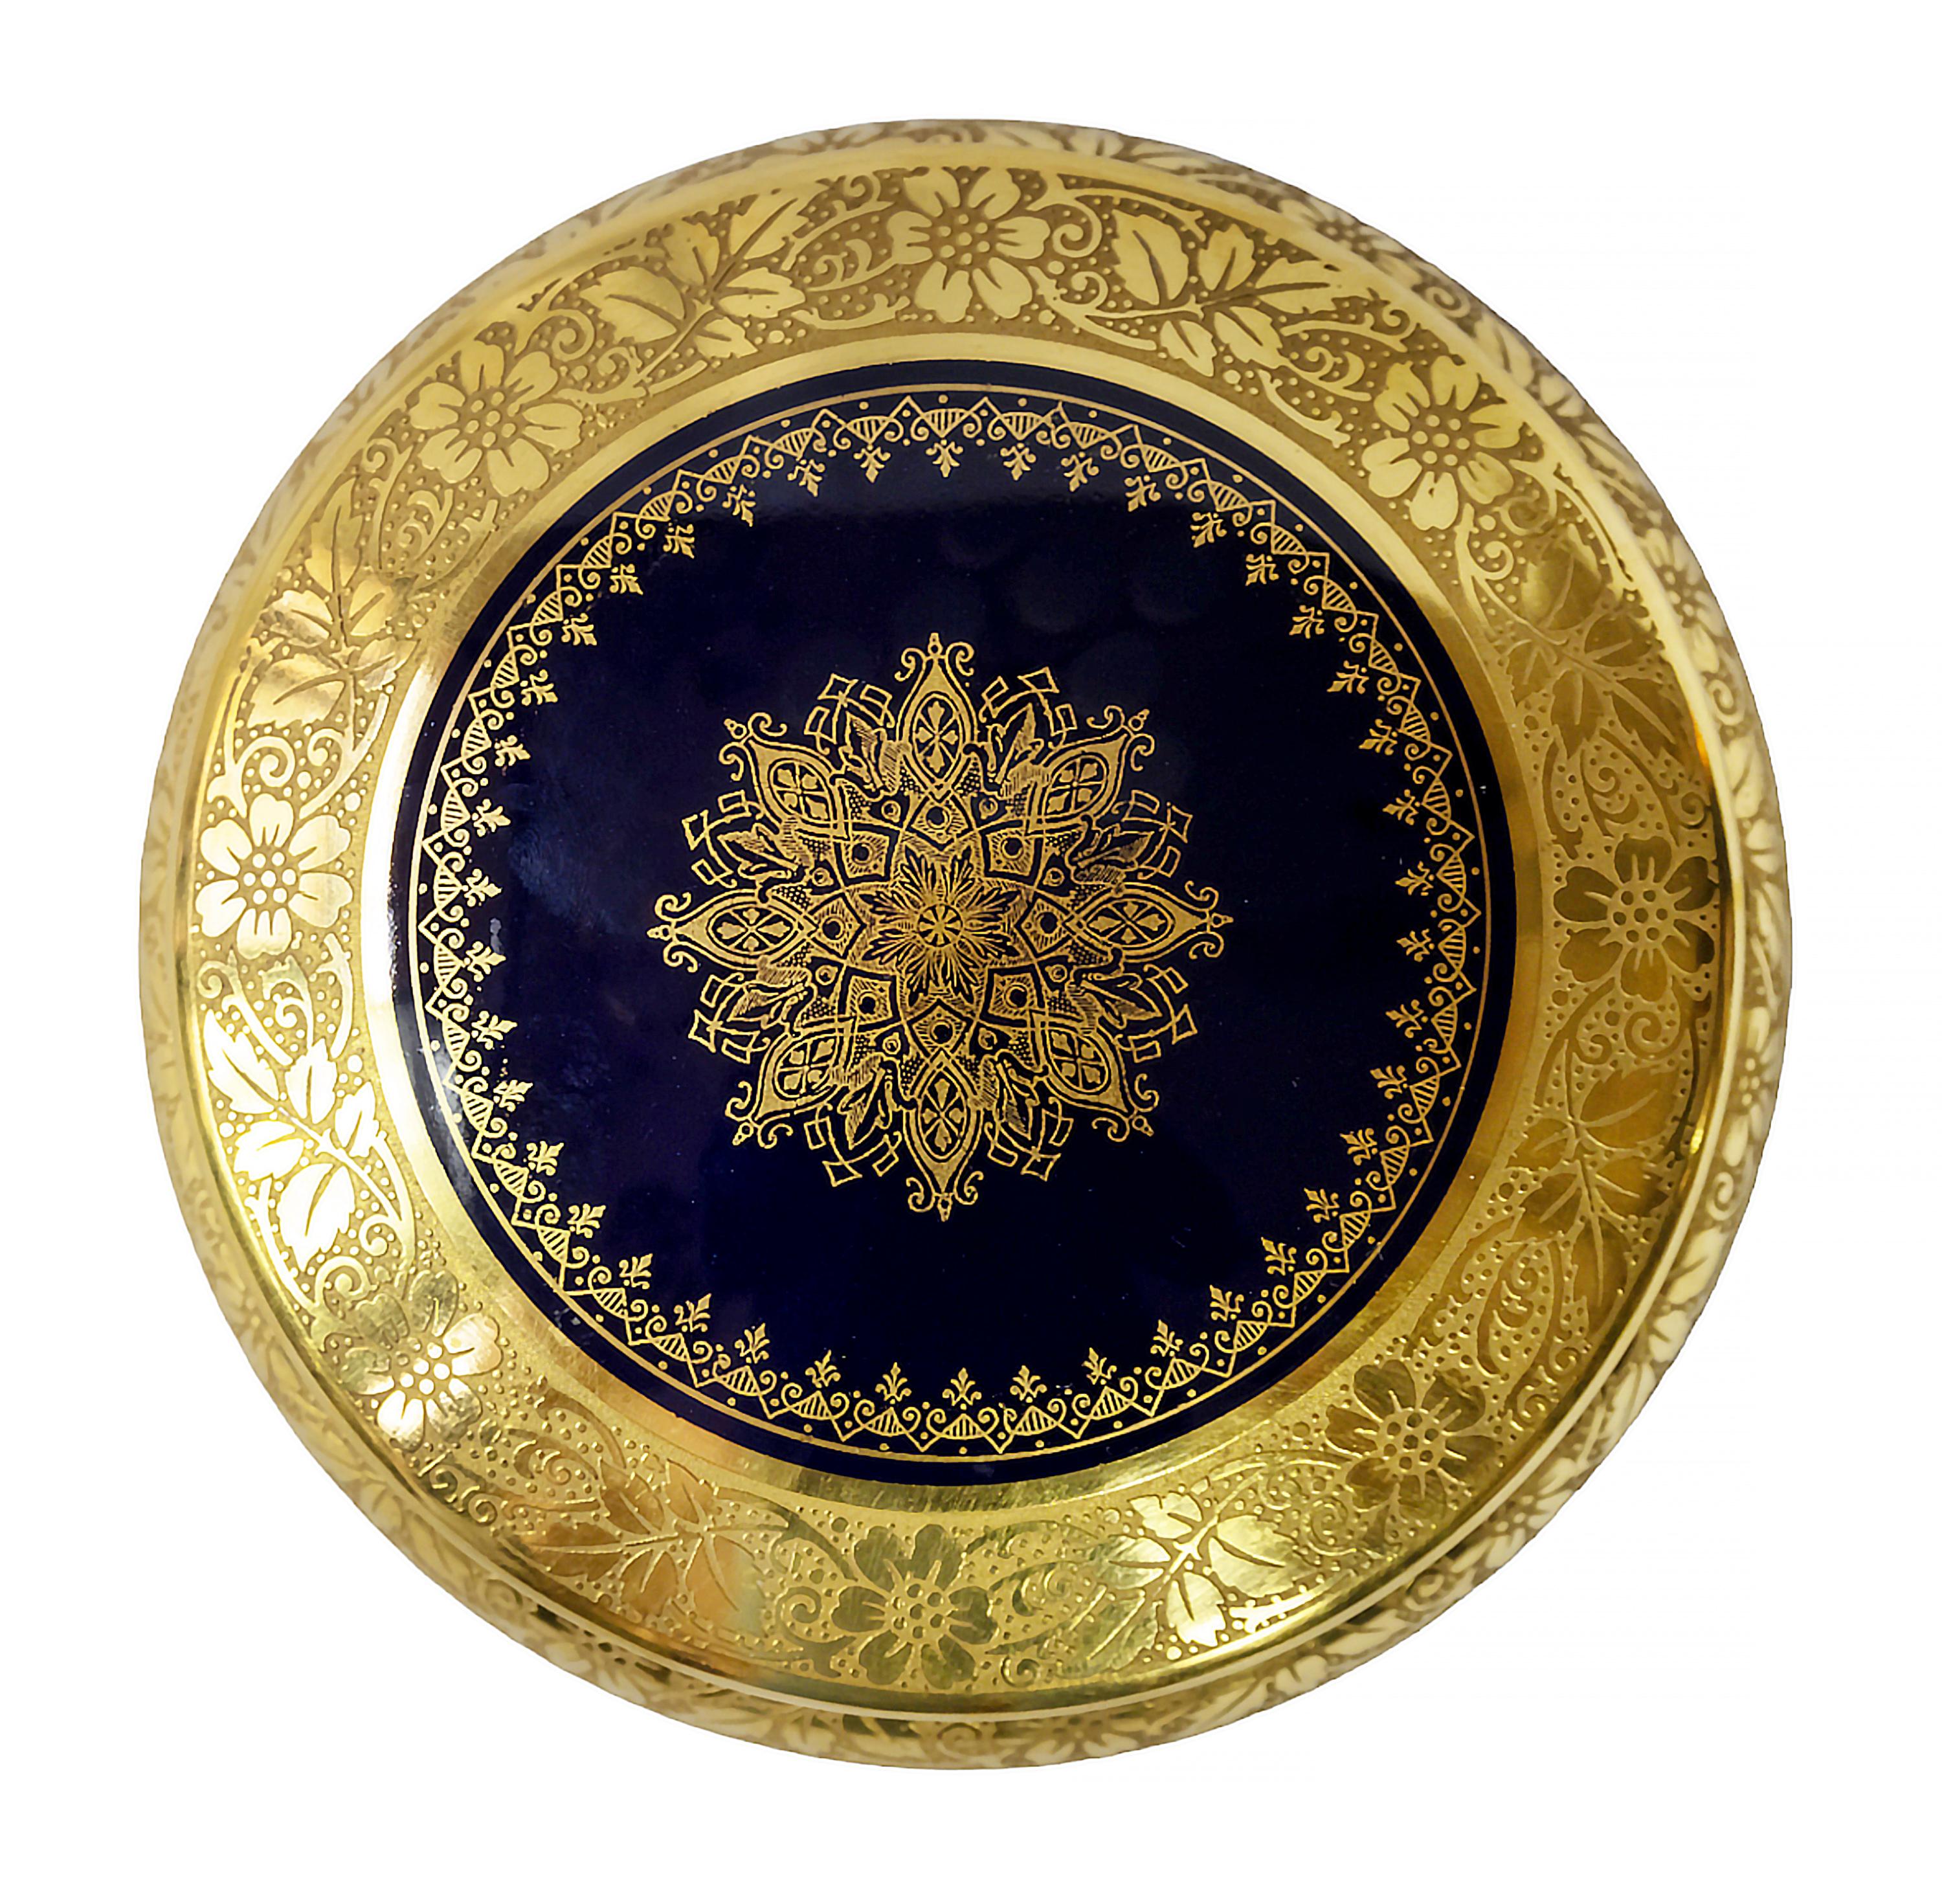 Schmuckkästchen aus kobaltblauem Porzellan, reich verziert mit Golddekor, hergestellt in Limoges, Frankreich.
Markiert auf der Unterseite.